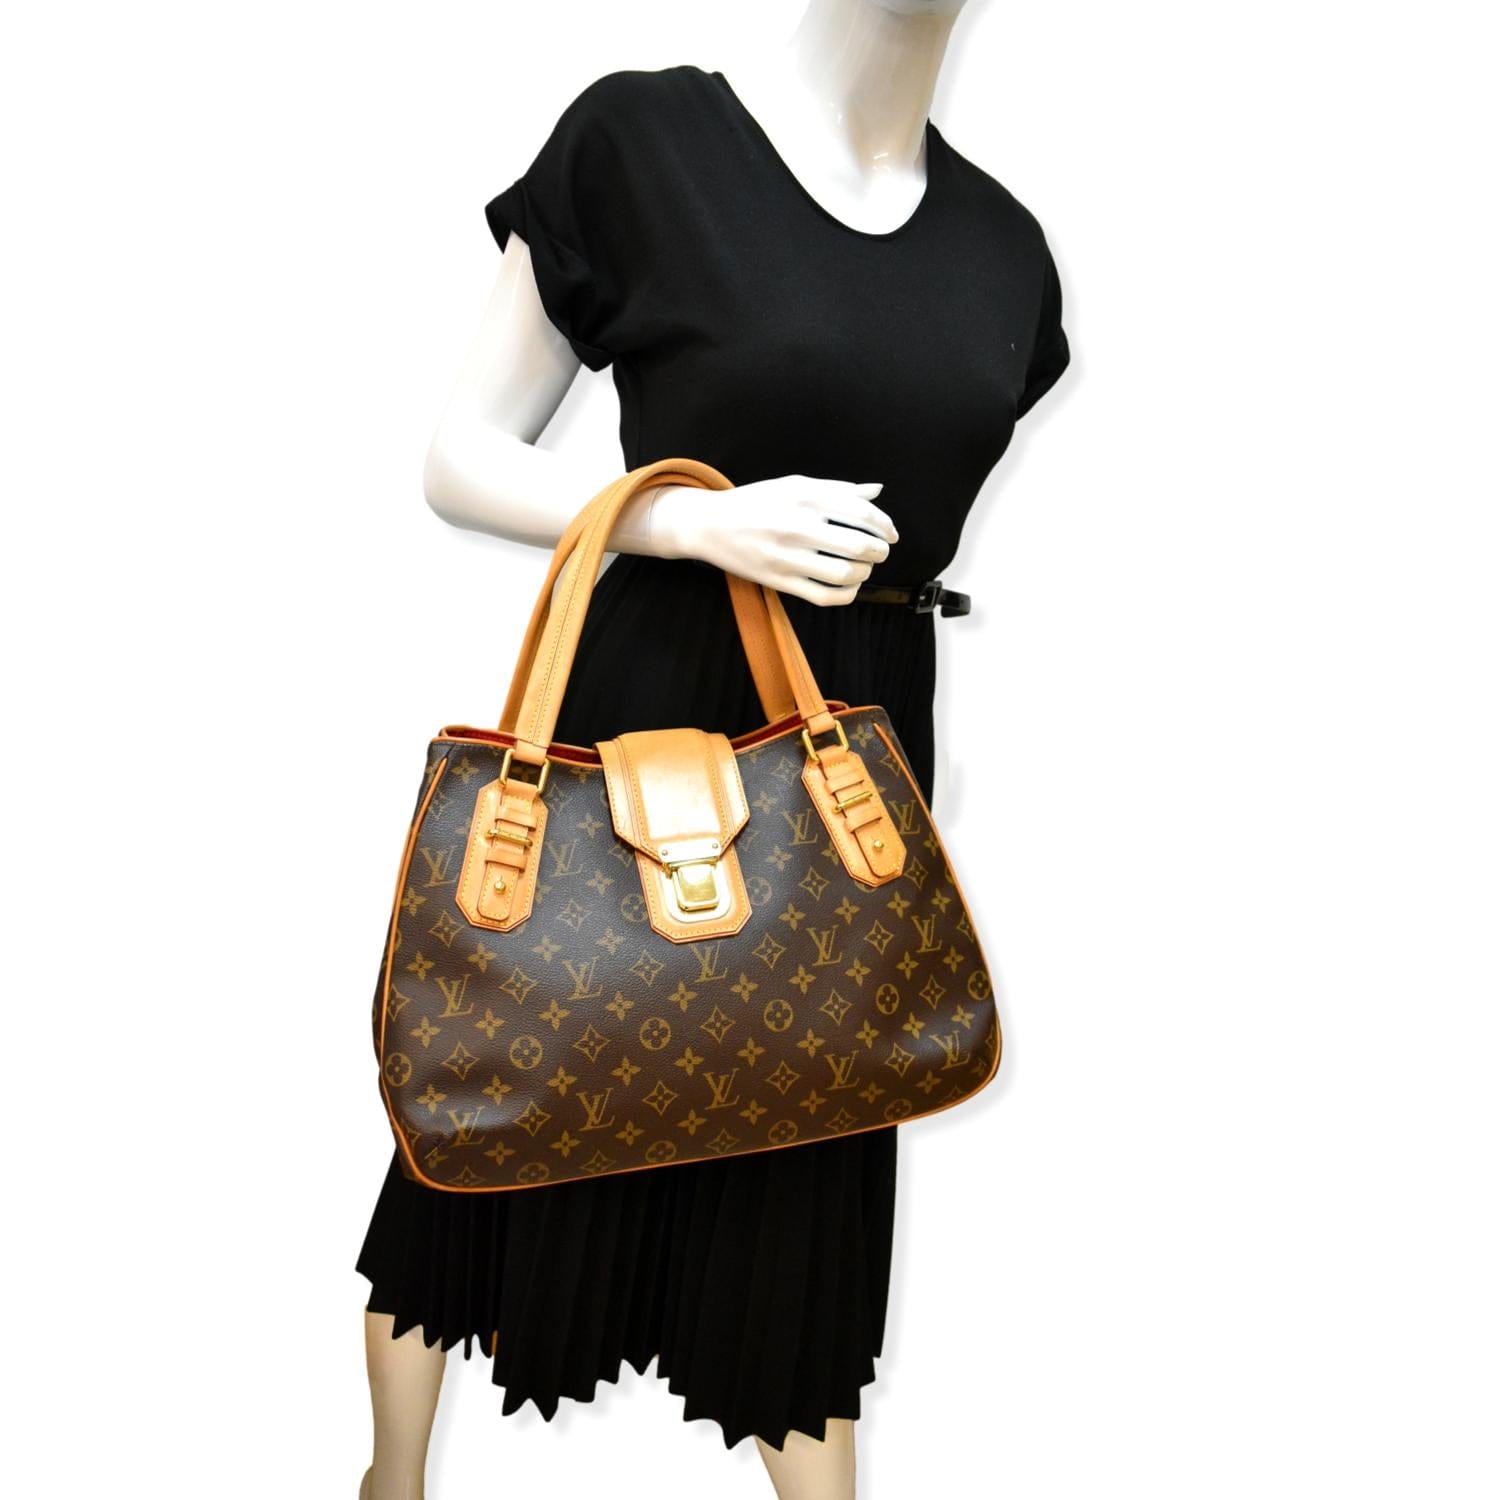 Louis Vuitton Monogram Griet Large Shopper Bag Brown